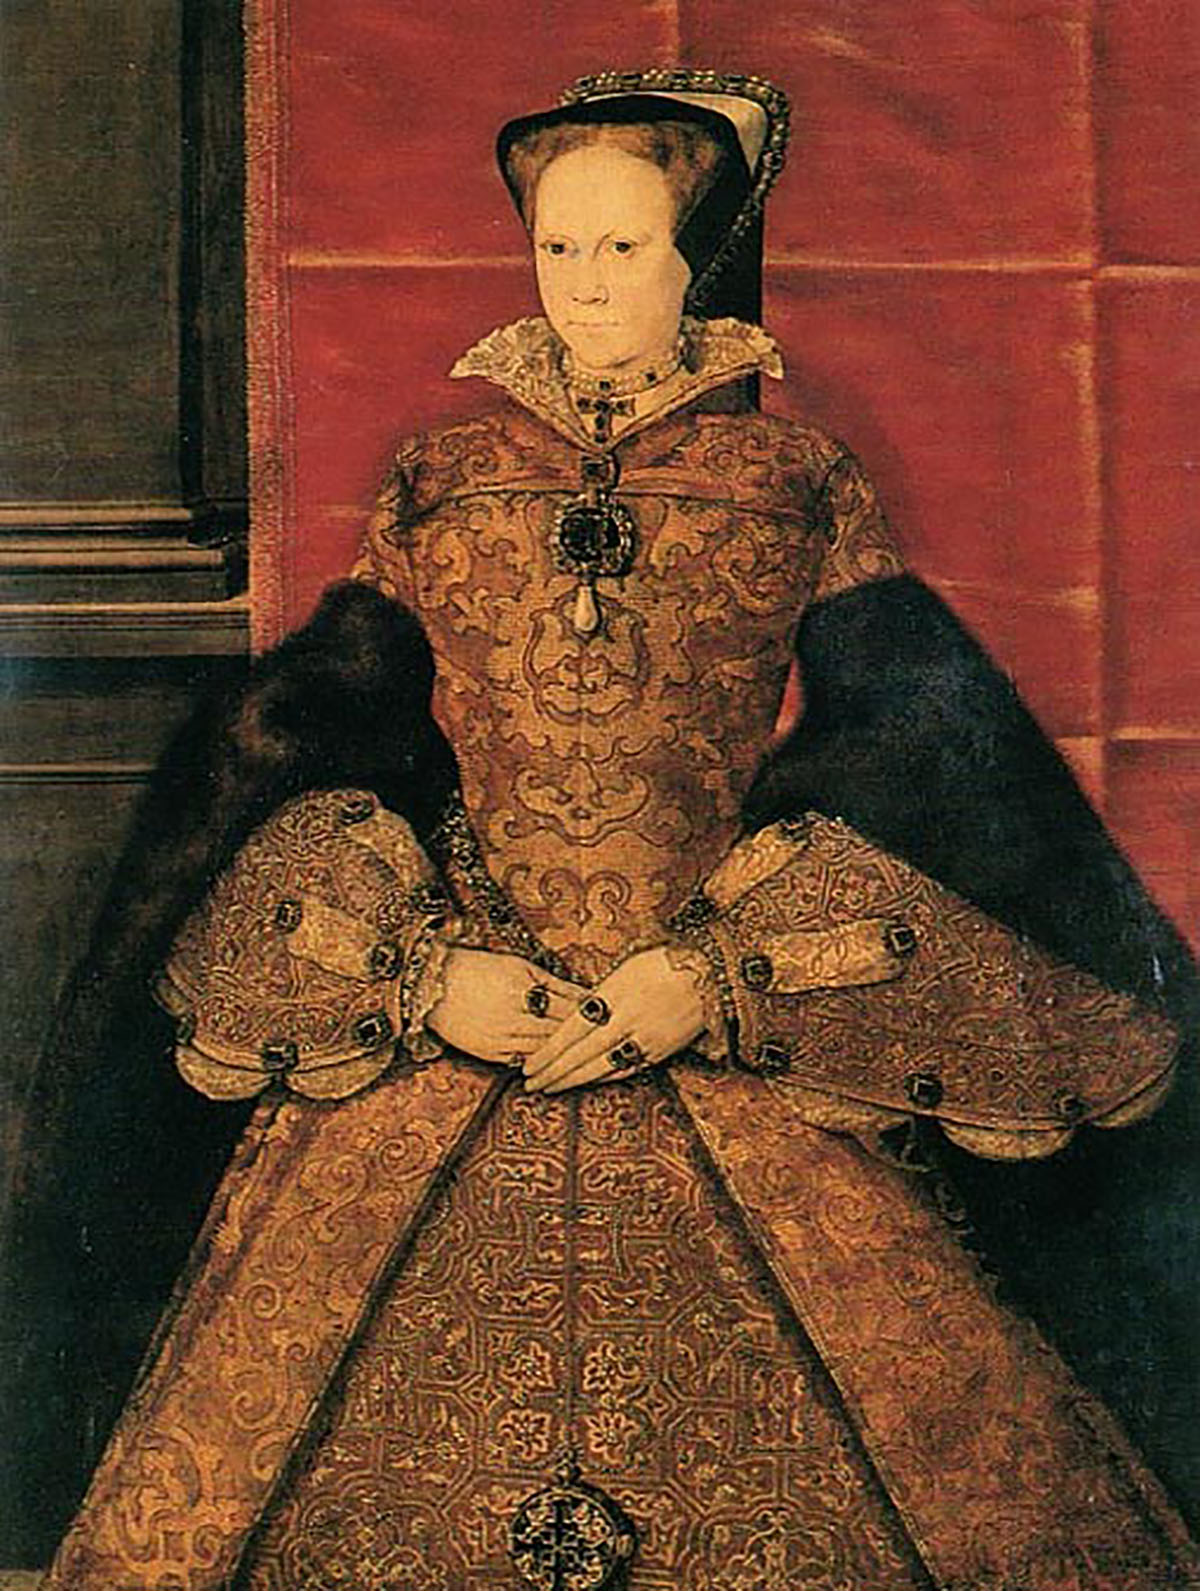 Retrato de Maria I , da Inglaterra, a monarca que ficou conhecida como Maria Sangrenta, óleo sobre painel de carvalho pintado em 1554 por Hans Eworth. (Domínio público)